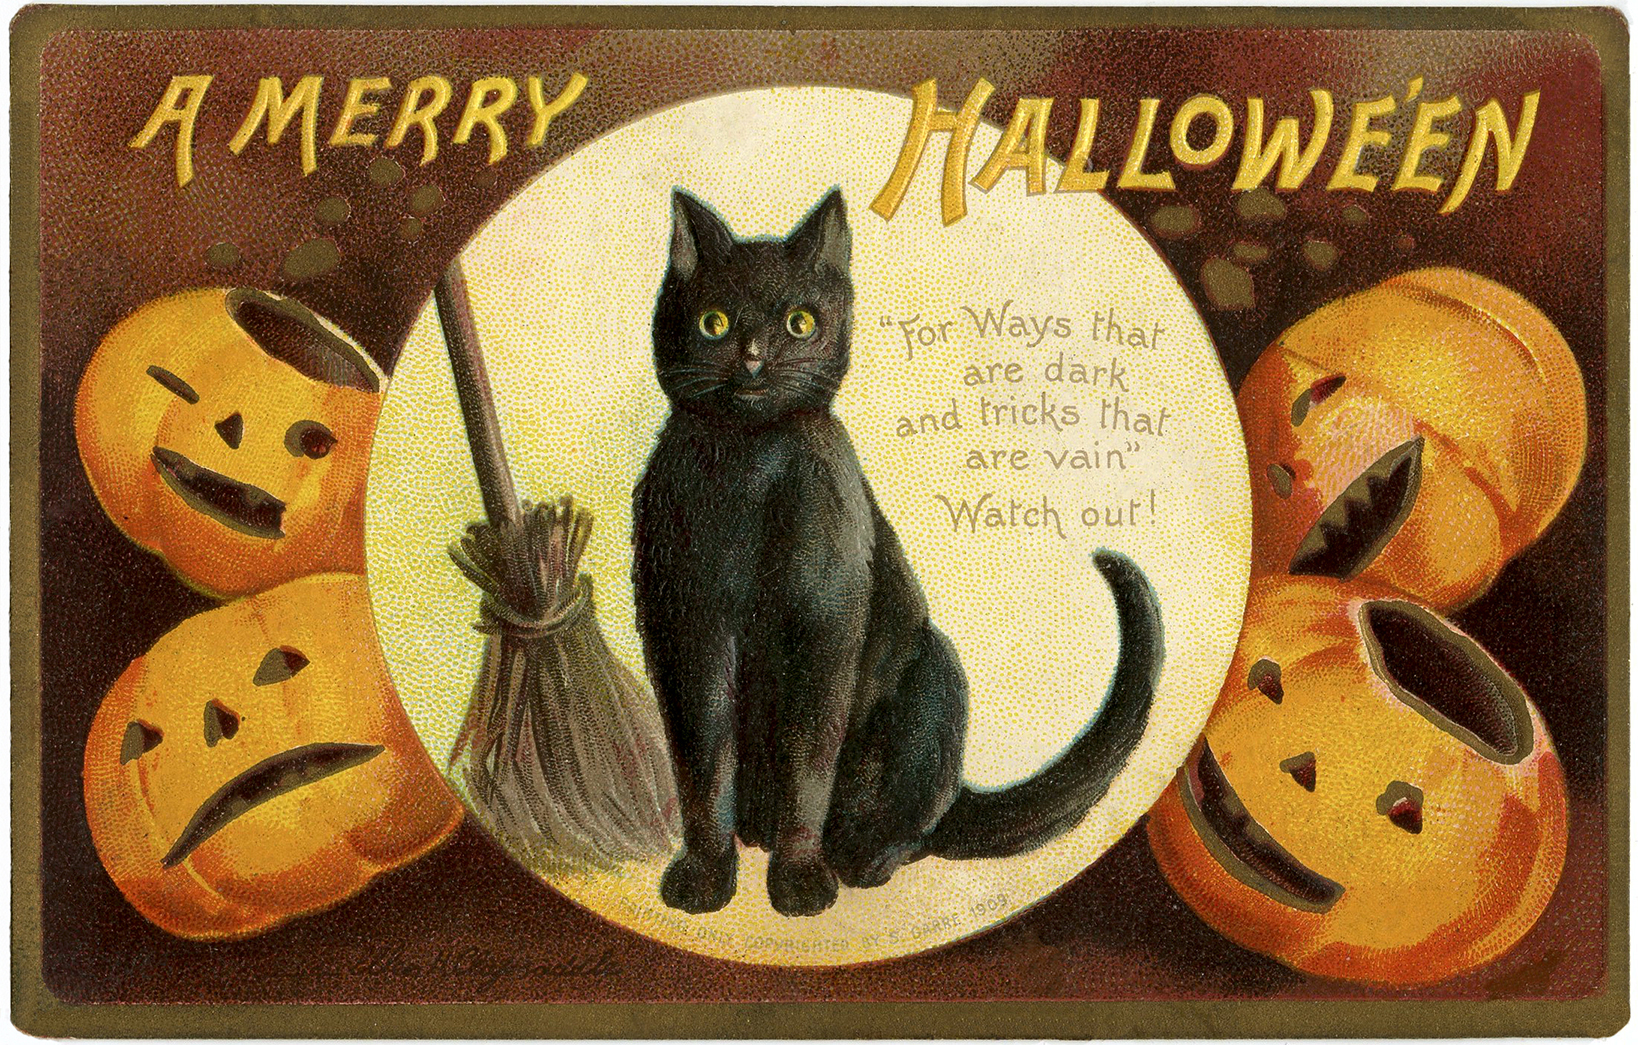 Printable Vintage Halloween Cards_19305